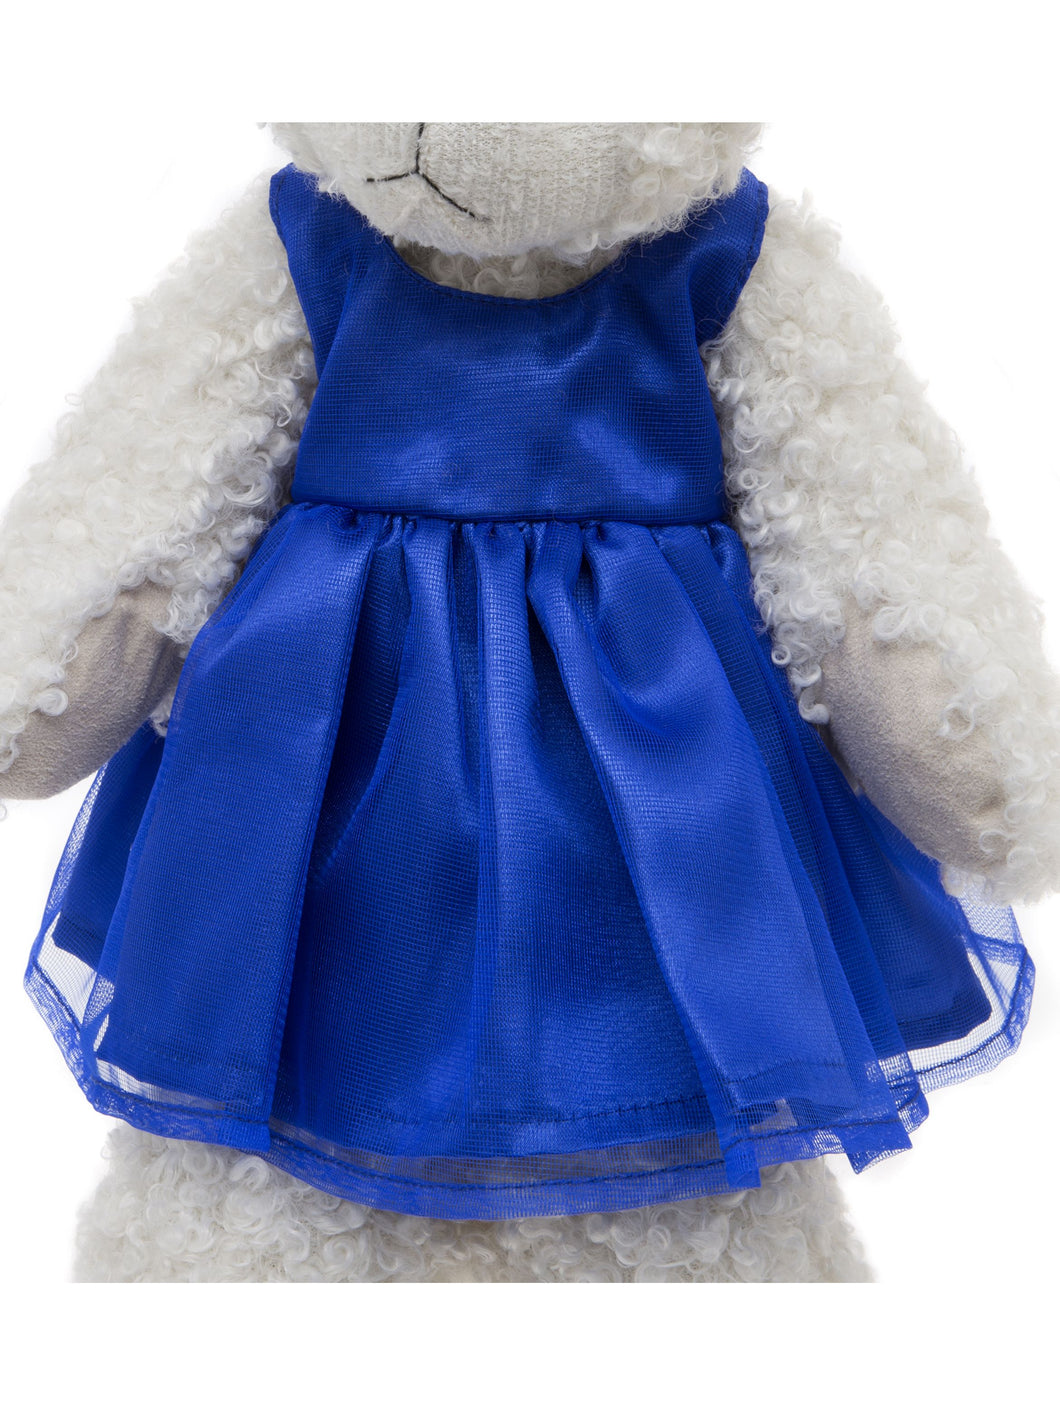 Tillys clothing charlie bears Australia teddy clothes 